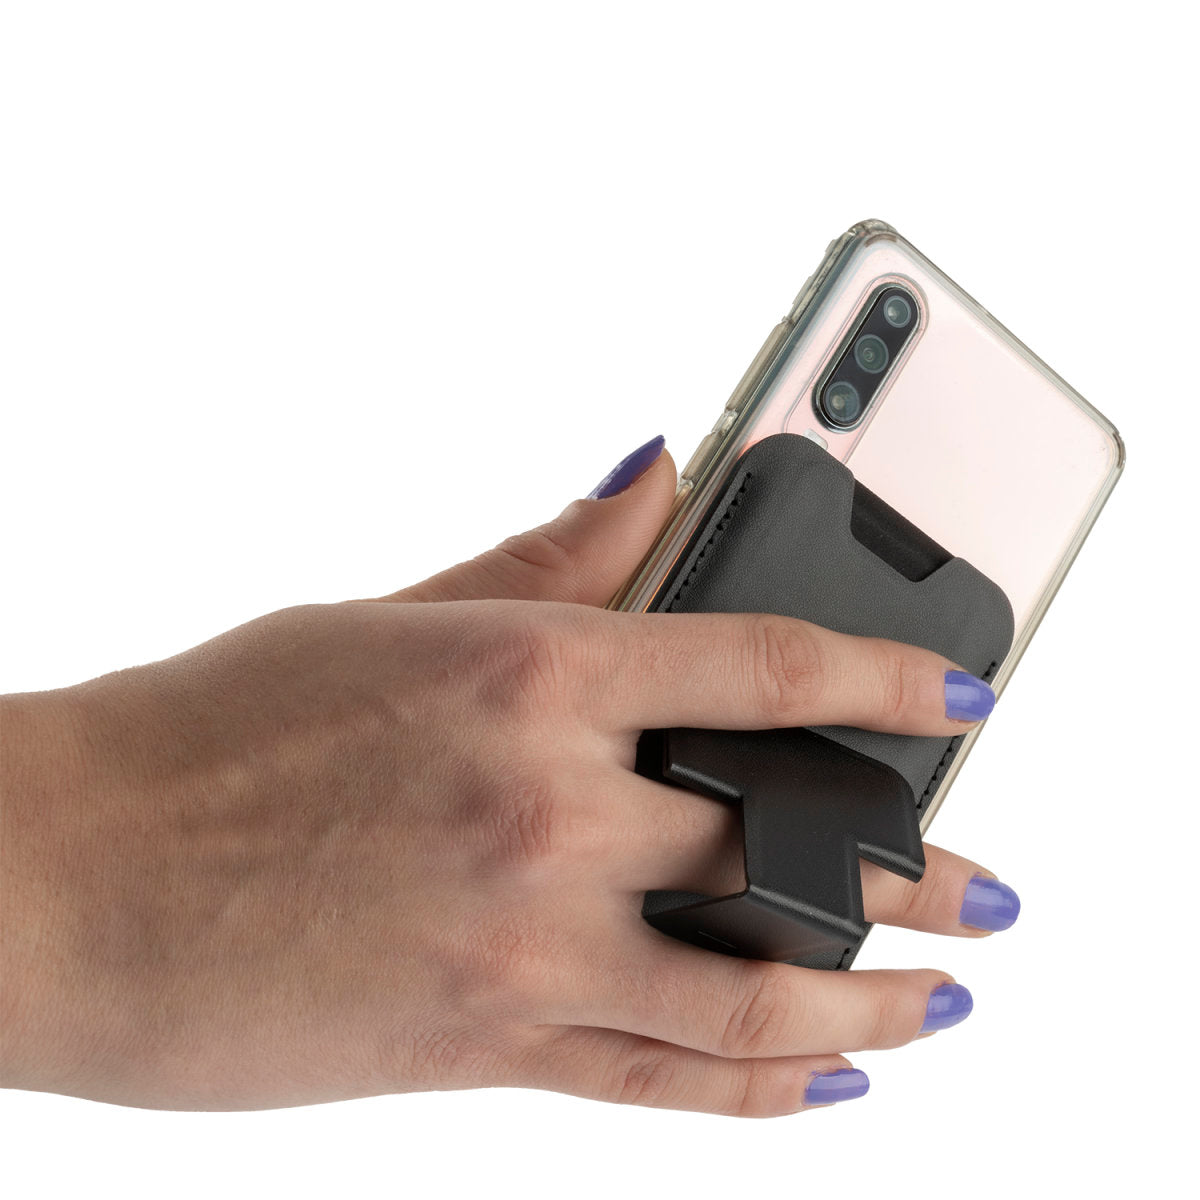 Kickstand Wallet schwarz Karten-Etui Handy Smartphone Halterung for Apple Ihpone Samsung & more